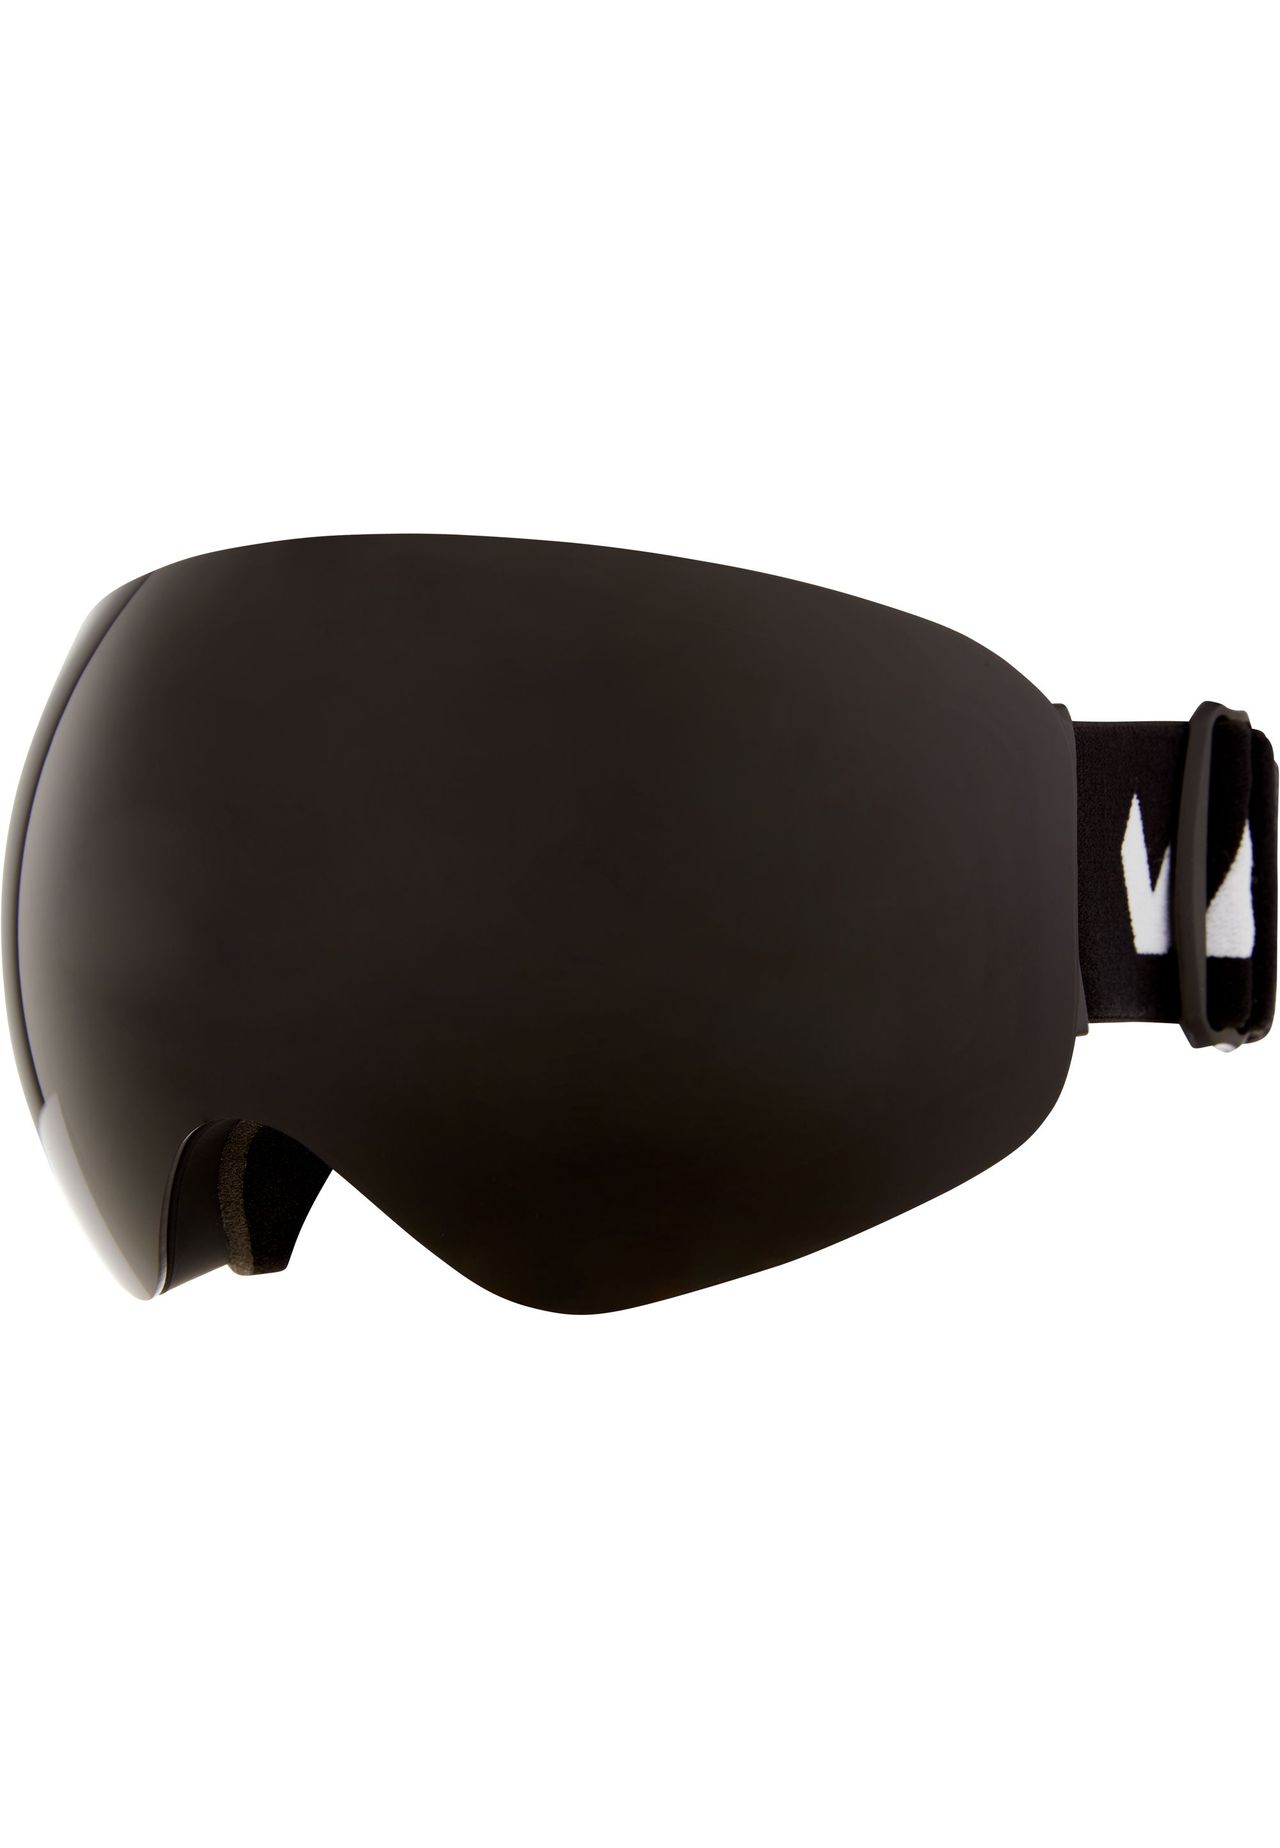 WHISTLER GALERIA | mit Anti-Fog-Beschichtung WS6100 Skibrille praktischer